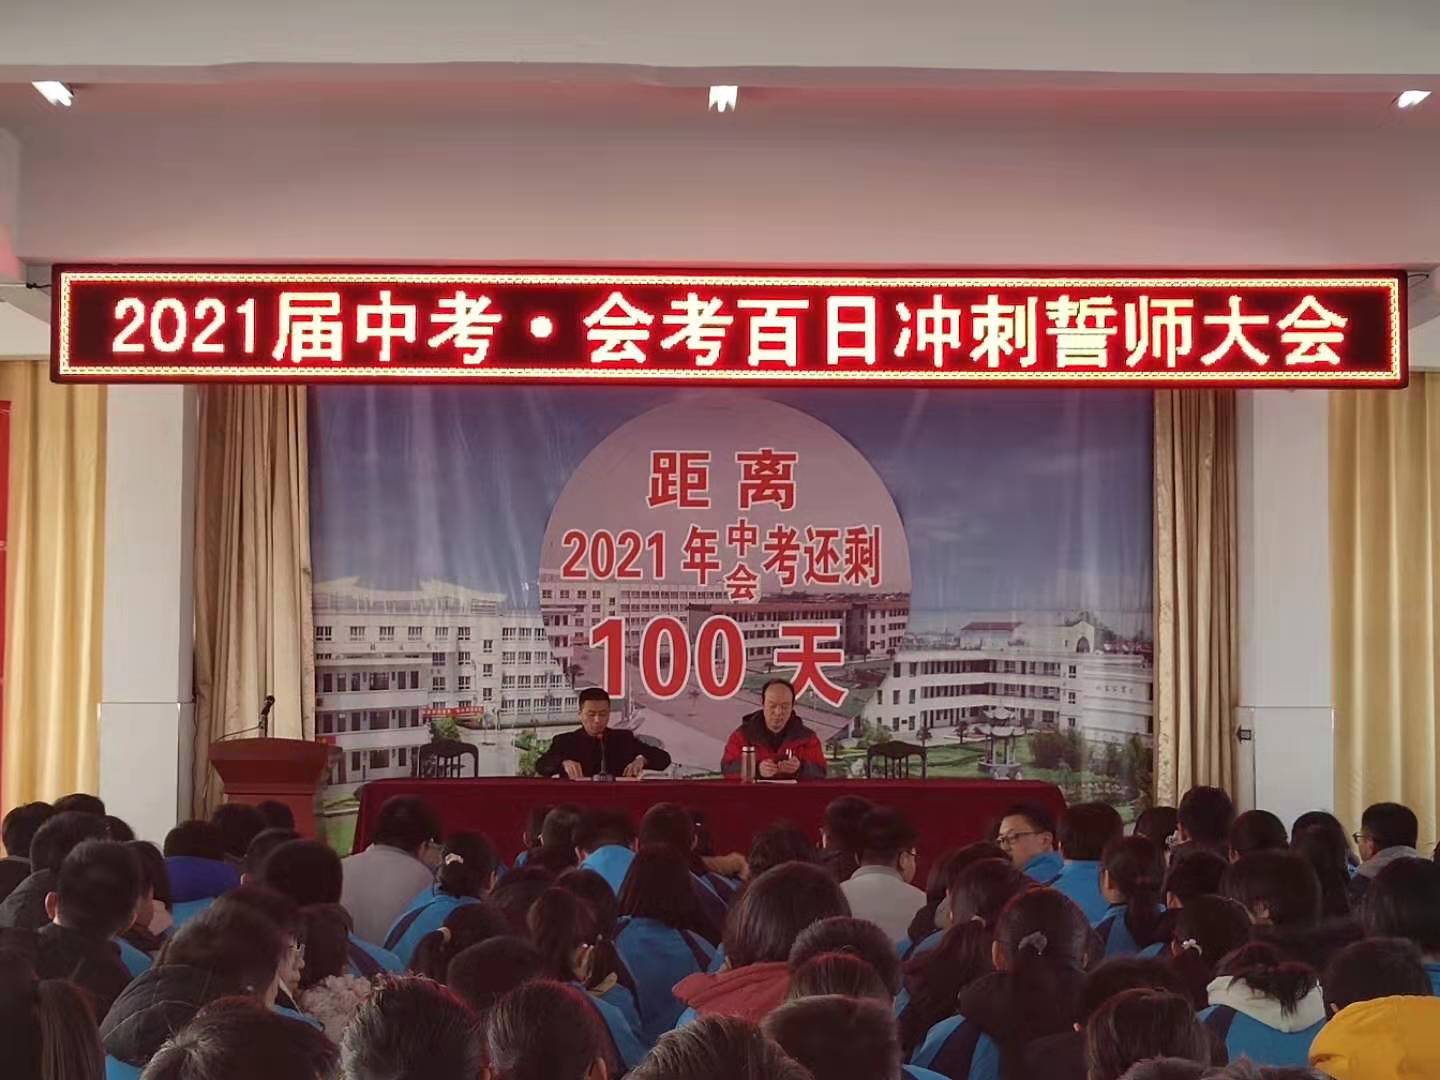 娄庄中学2021图片